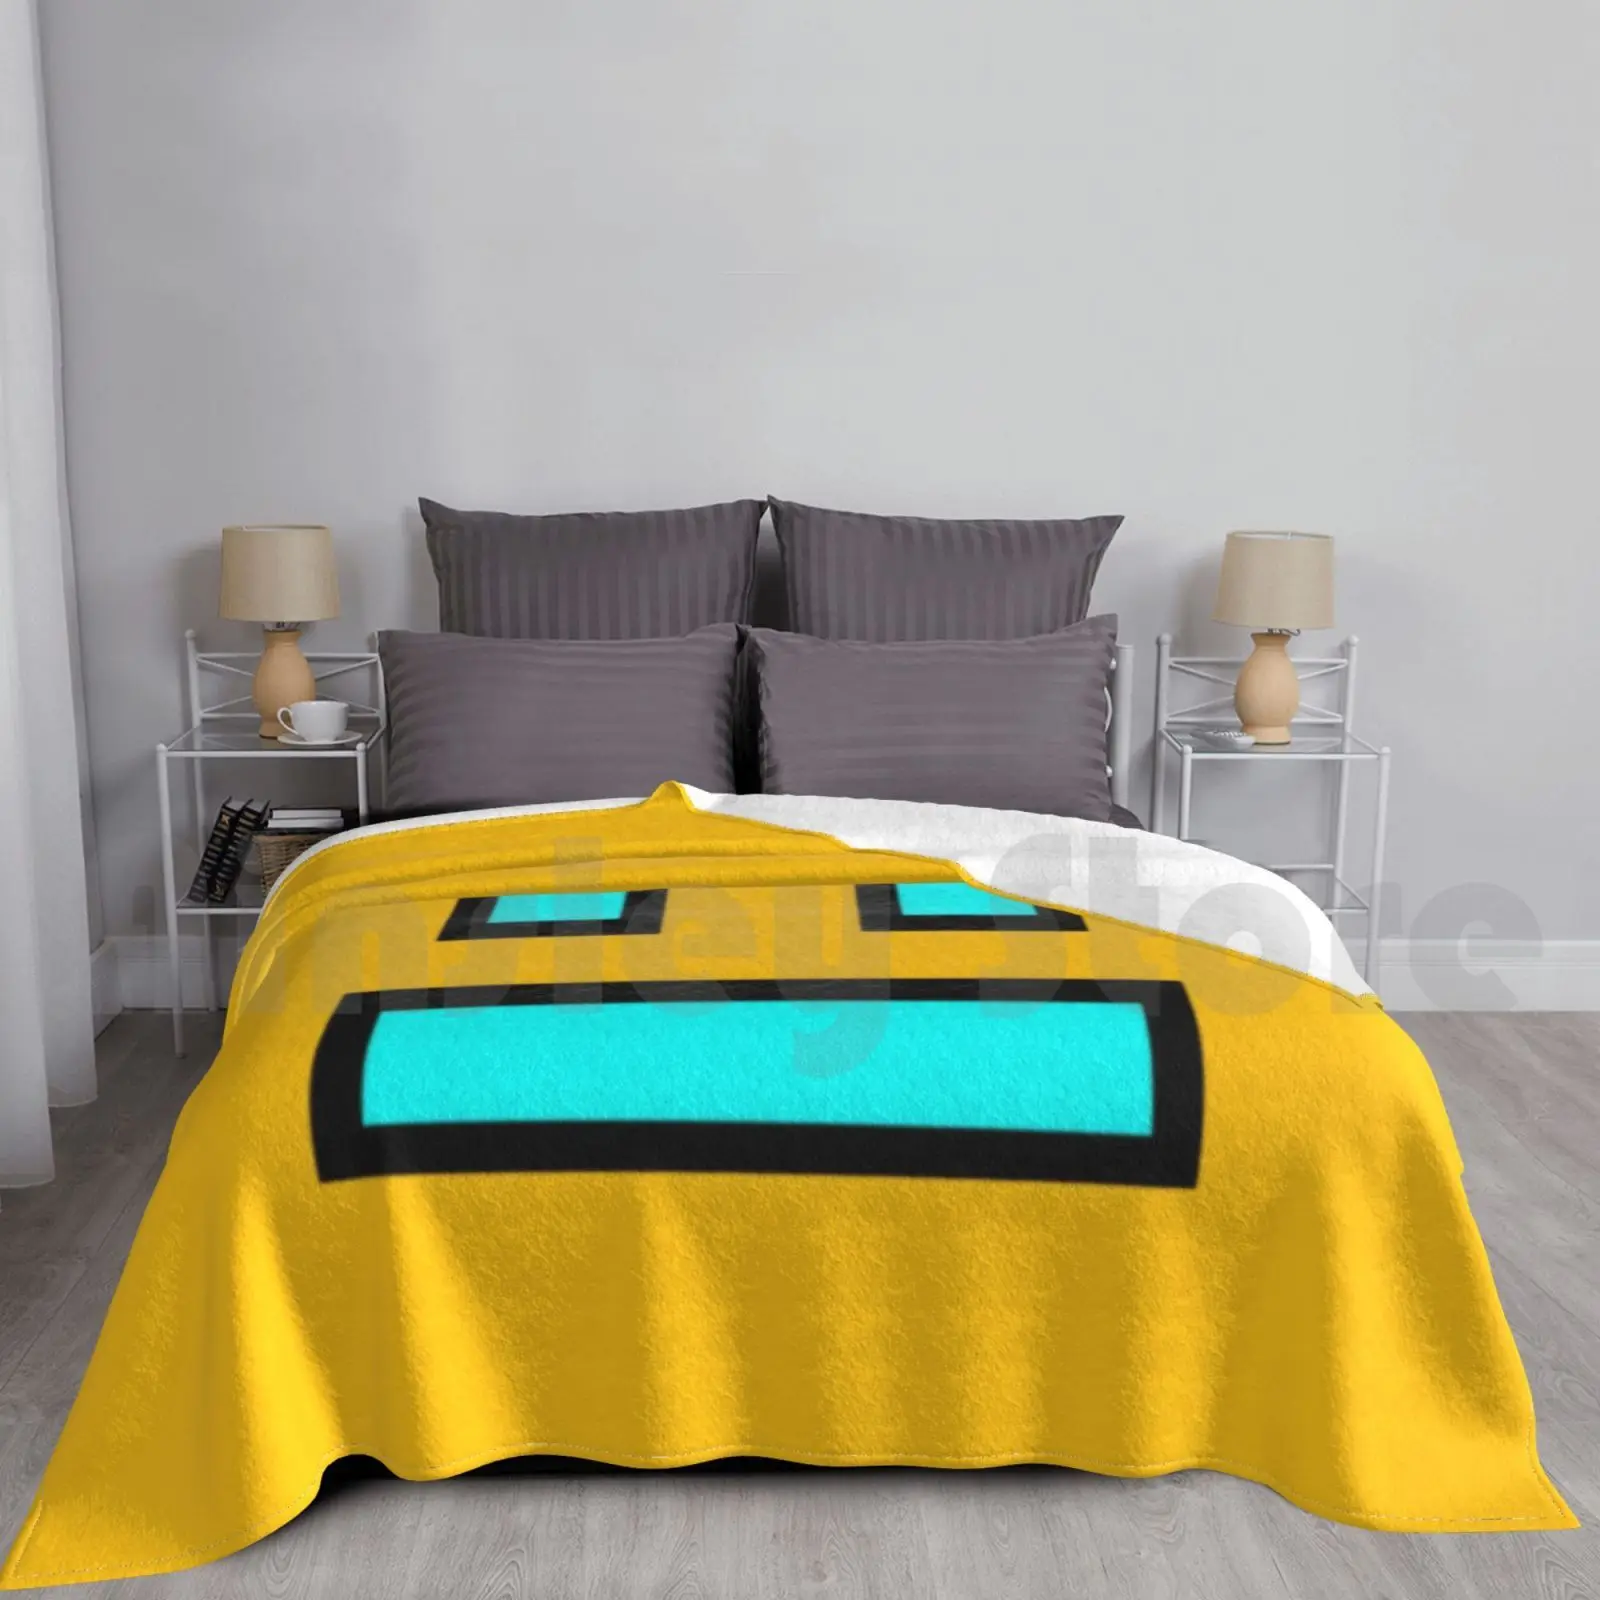 

Одеяло для дивана или кровати с геометрическим рисунком